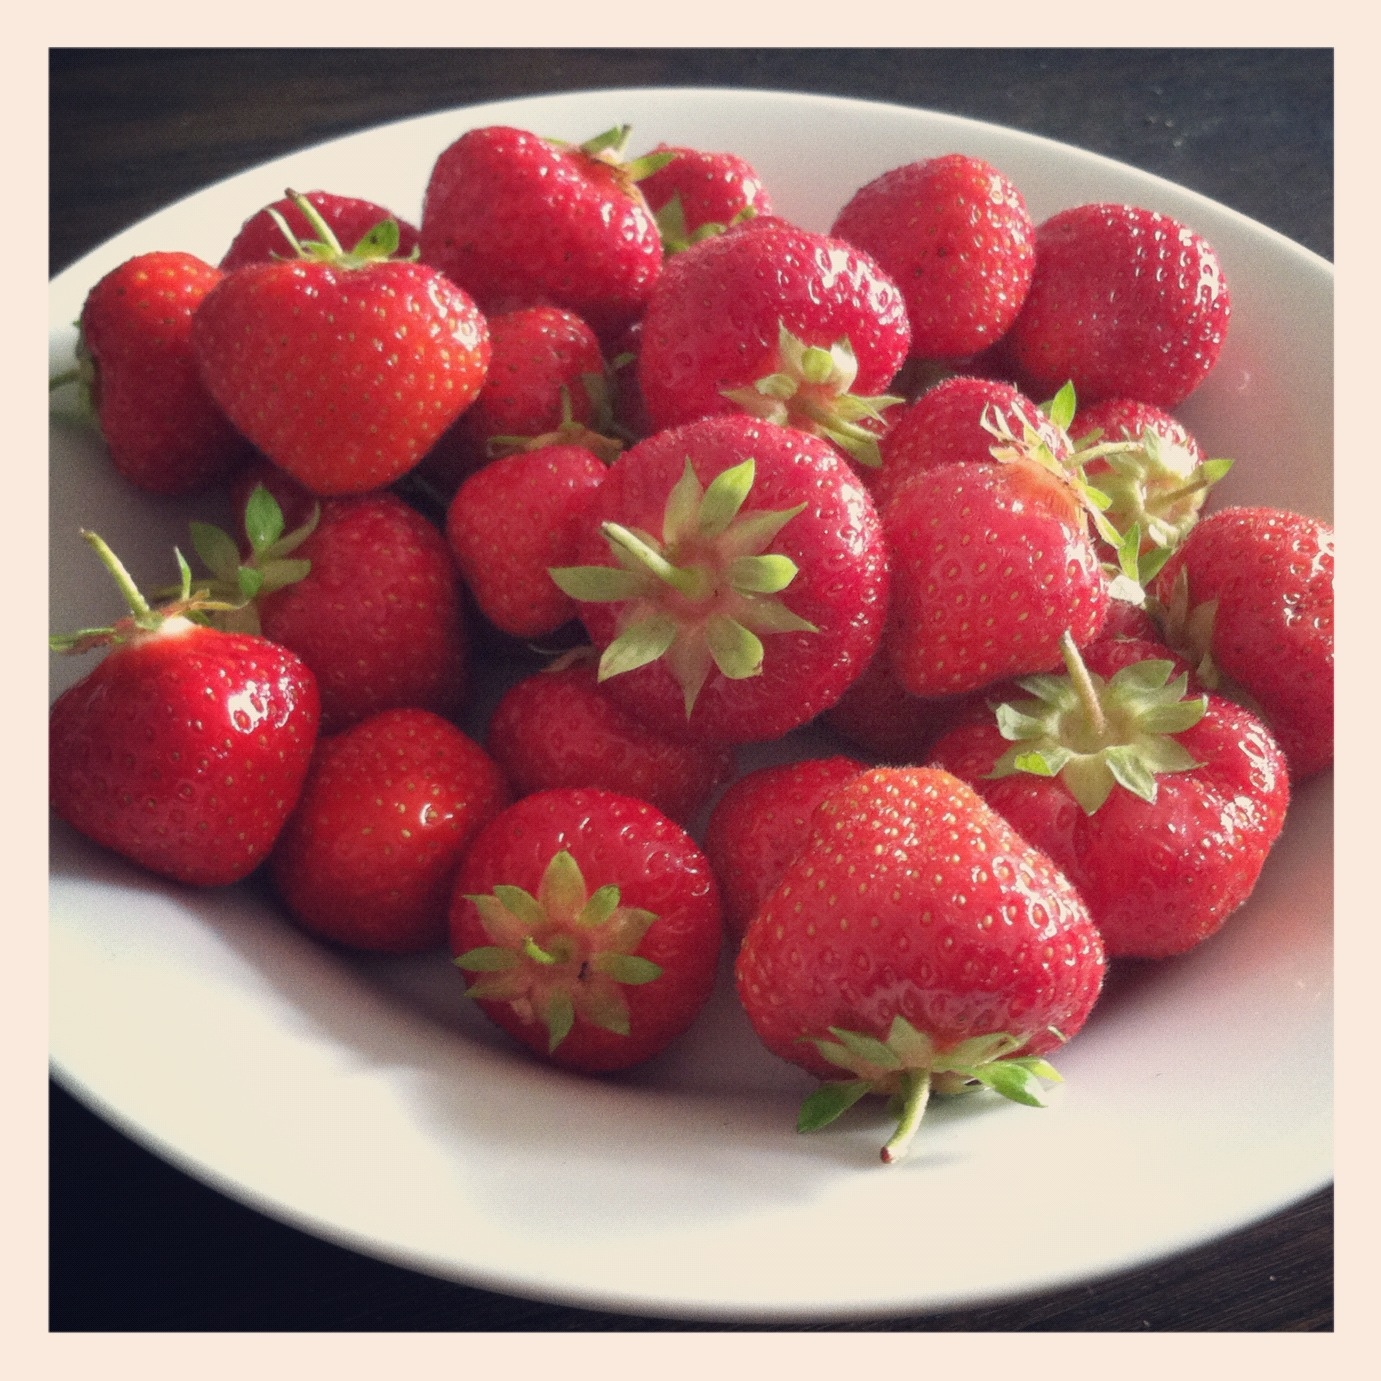 the Spoils of Summer, fresh Danish Strawberries